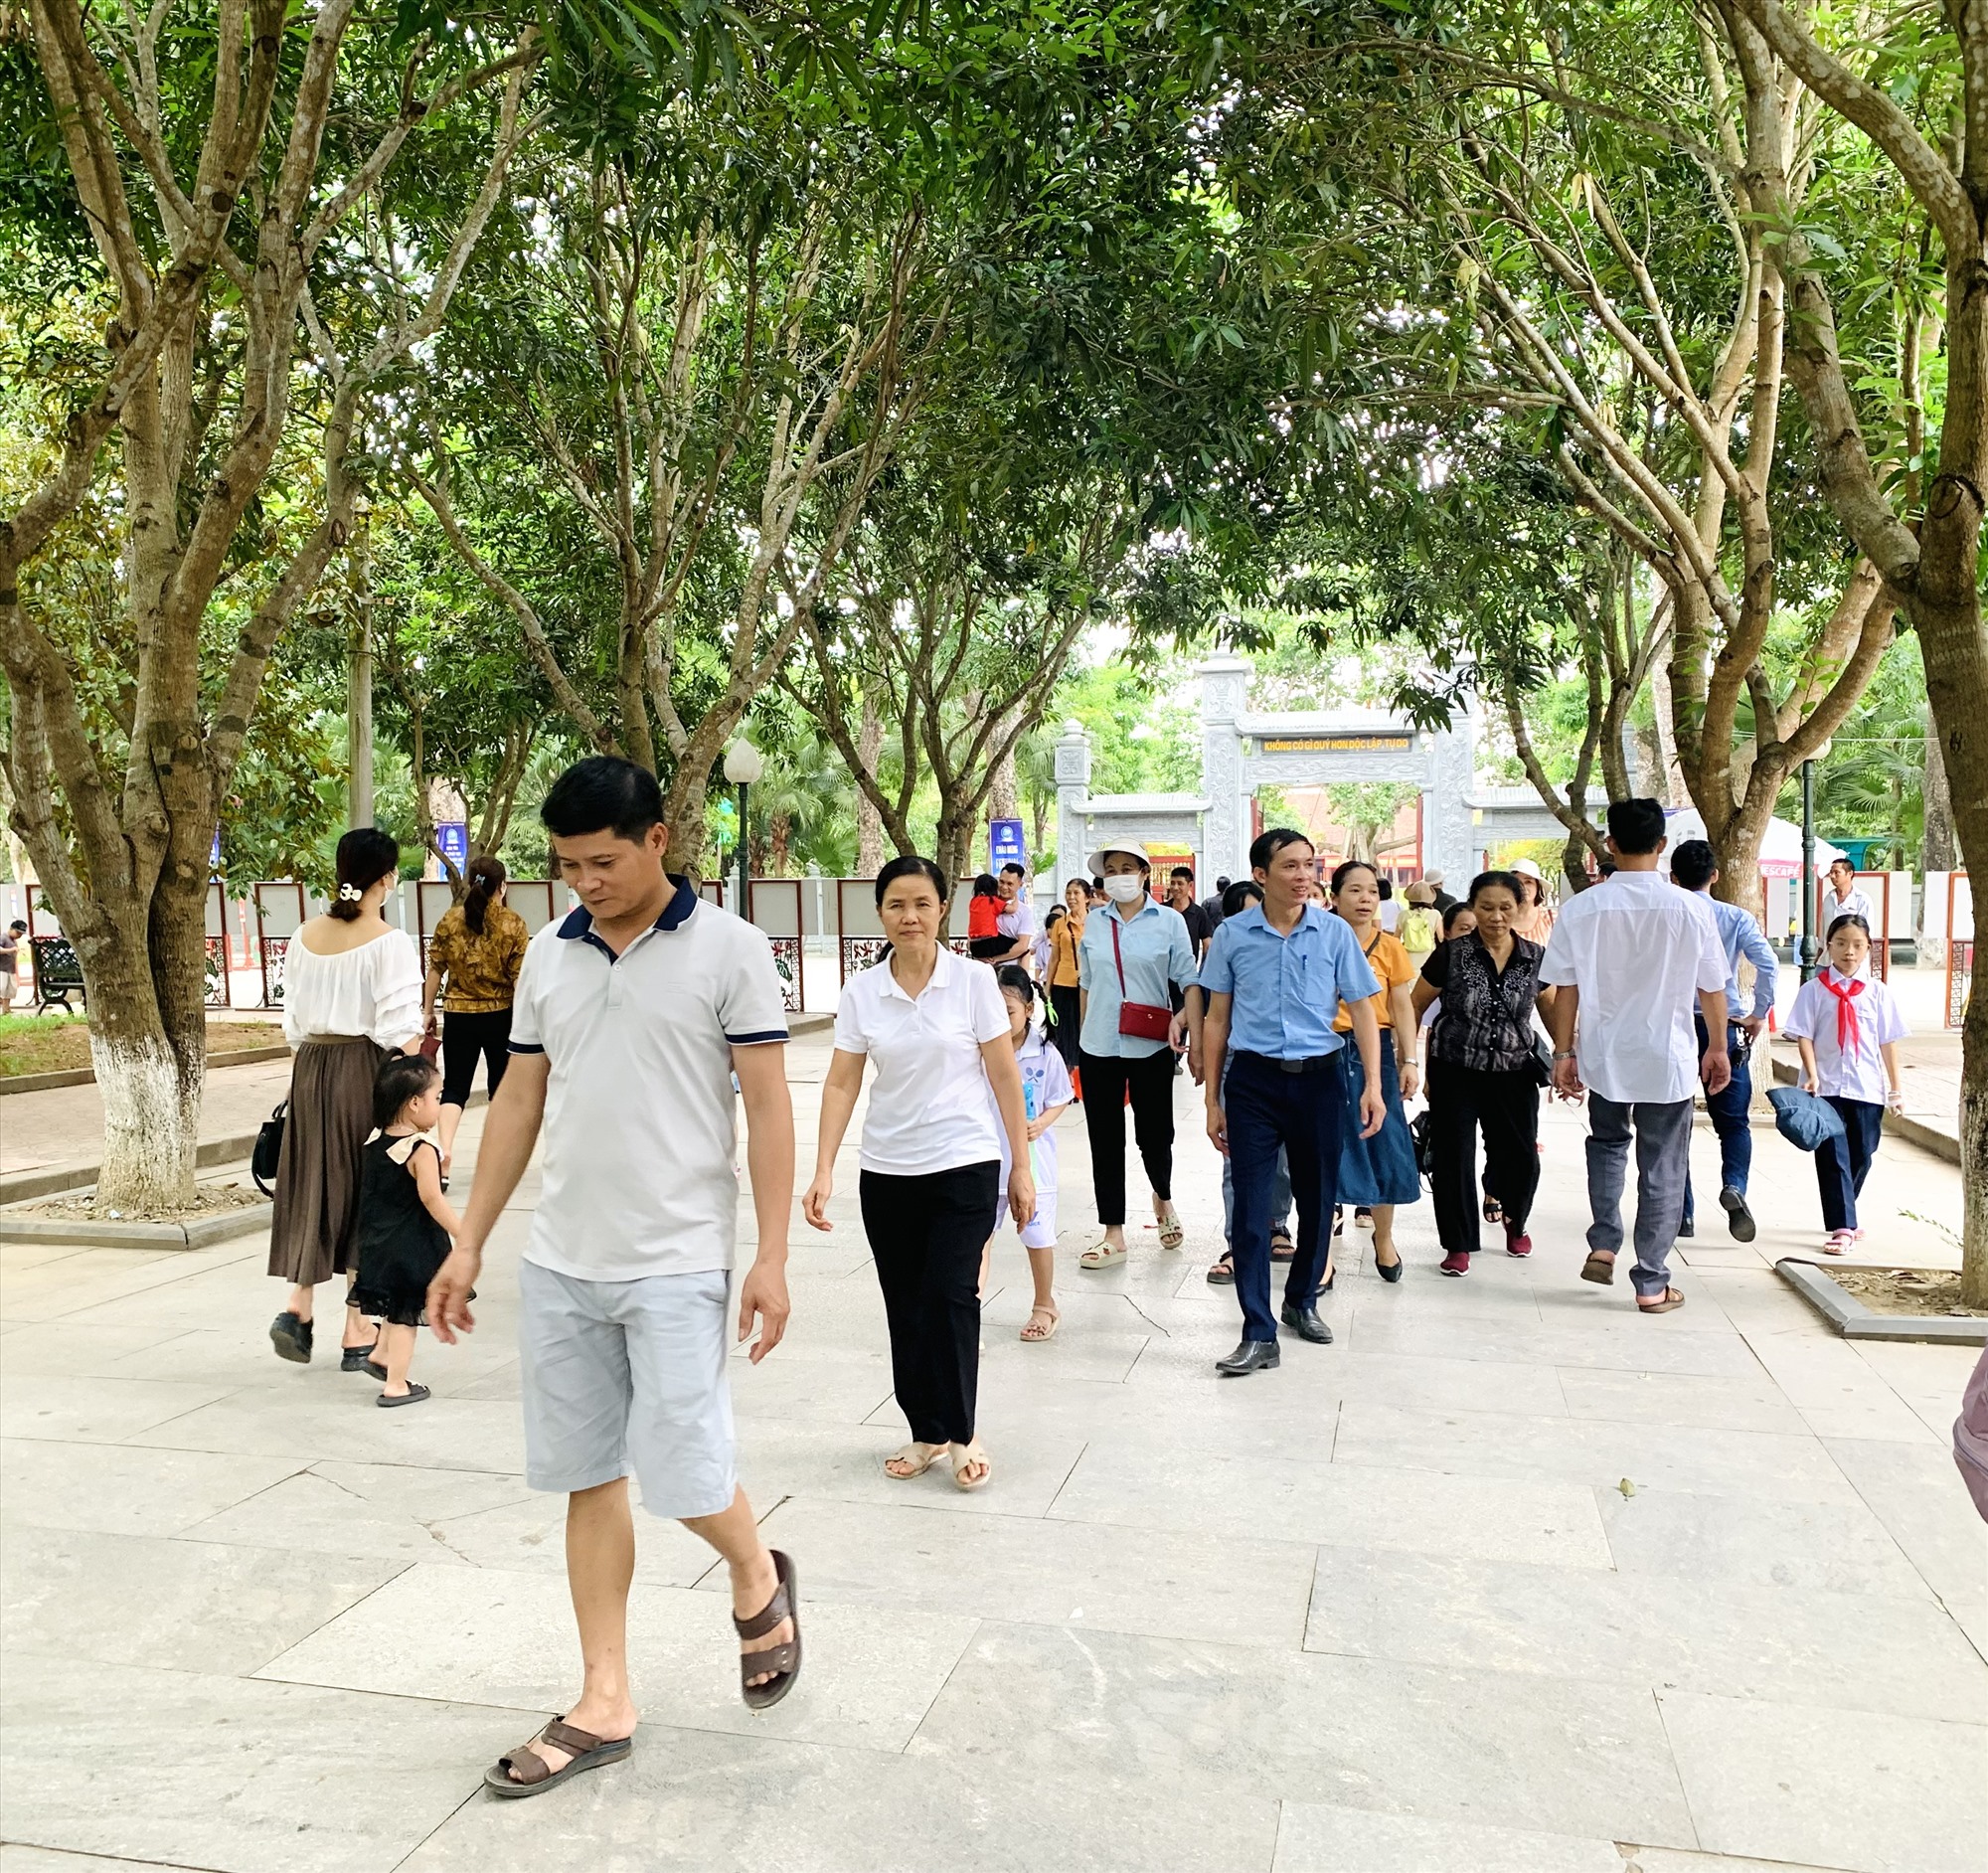 Tham quan Khu Di tích Kim Liên, du khách có thể đến thăm nhiều địa điểm như Làng Sen, làng Hoàng Trù, đền Chung Sơn,...Ảnh: Quỳnh Trang